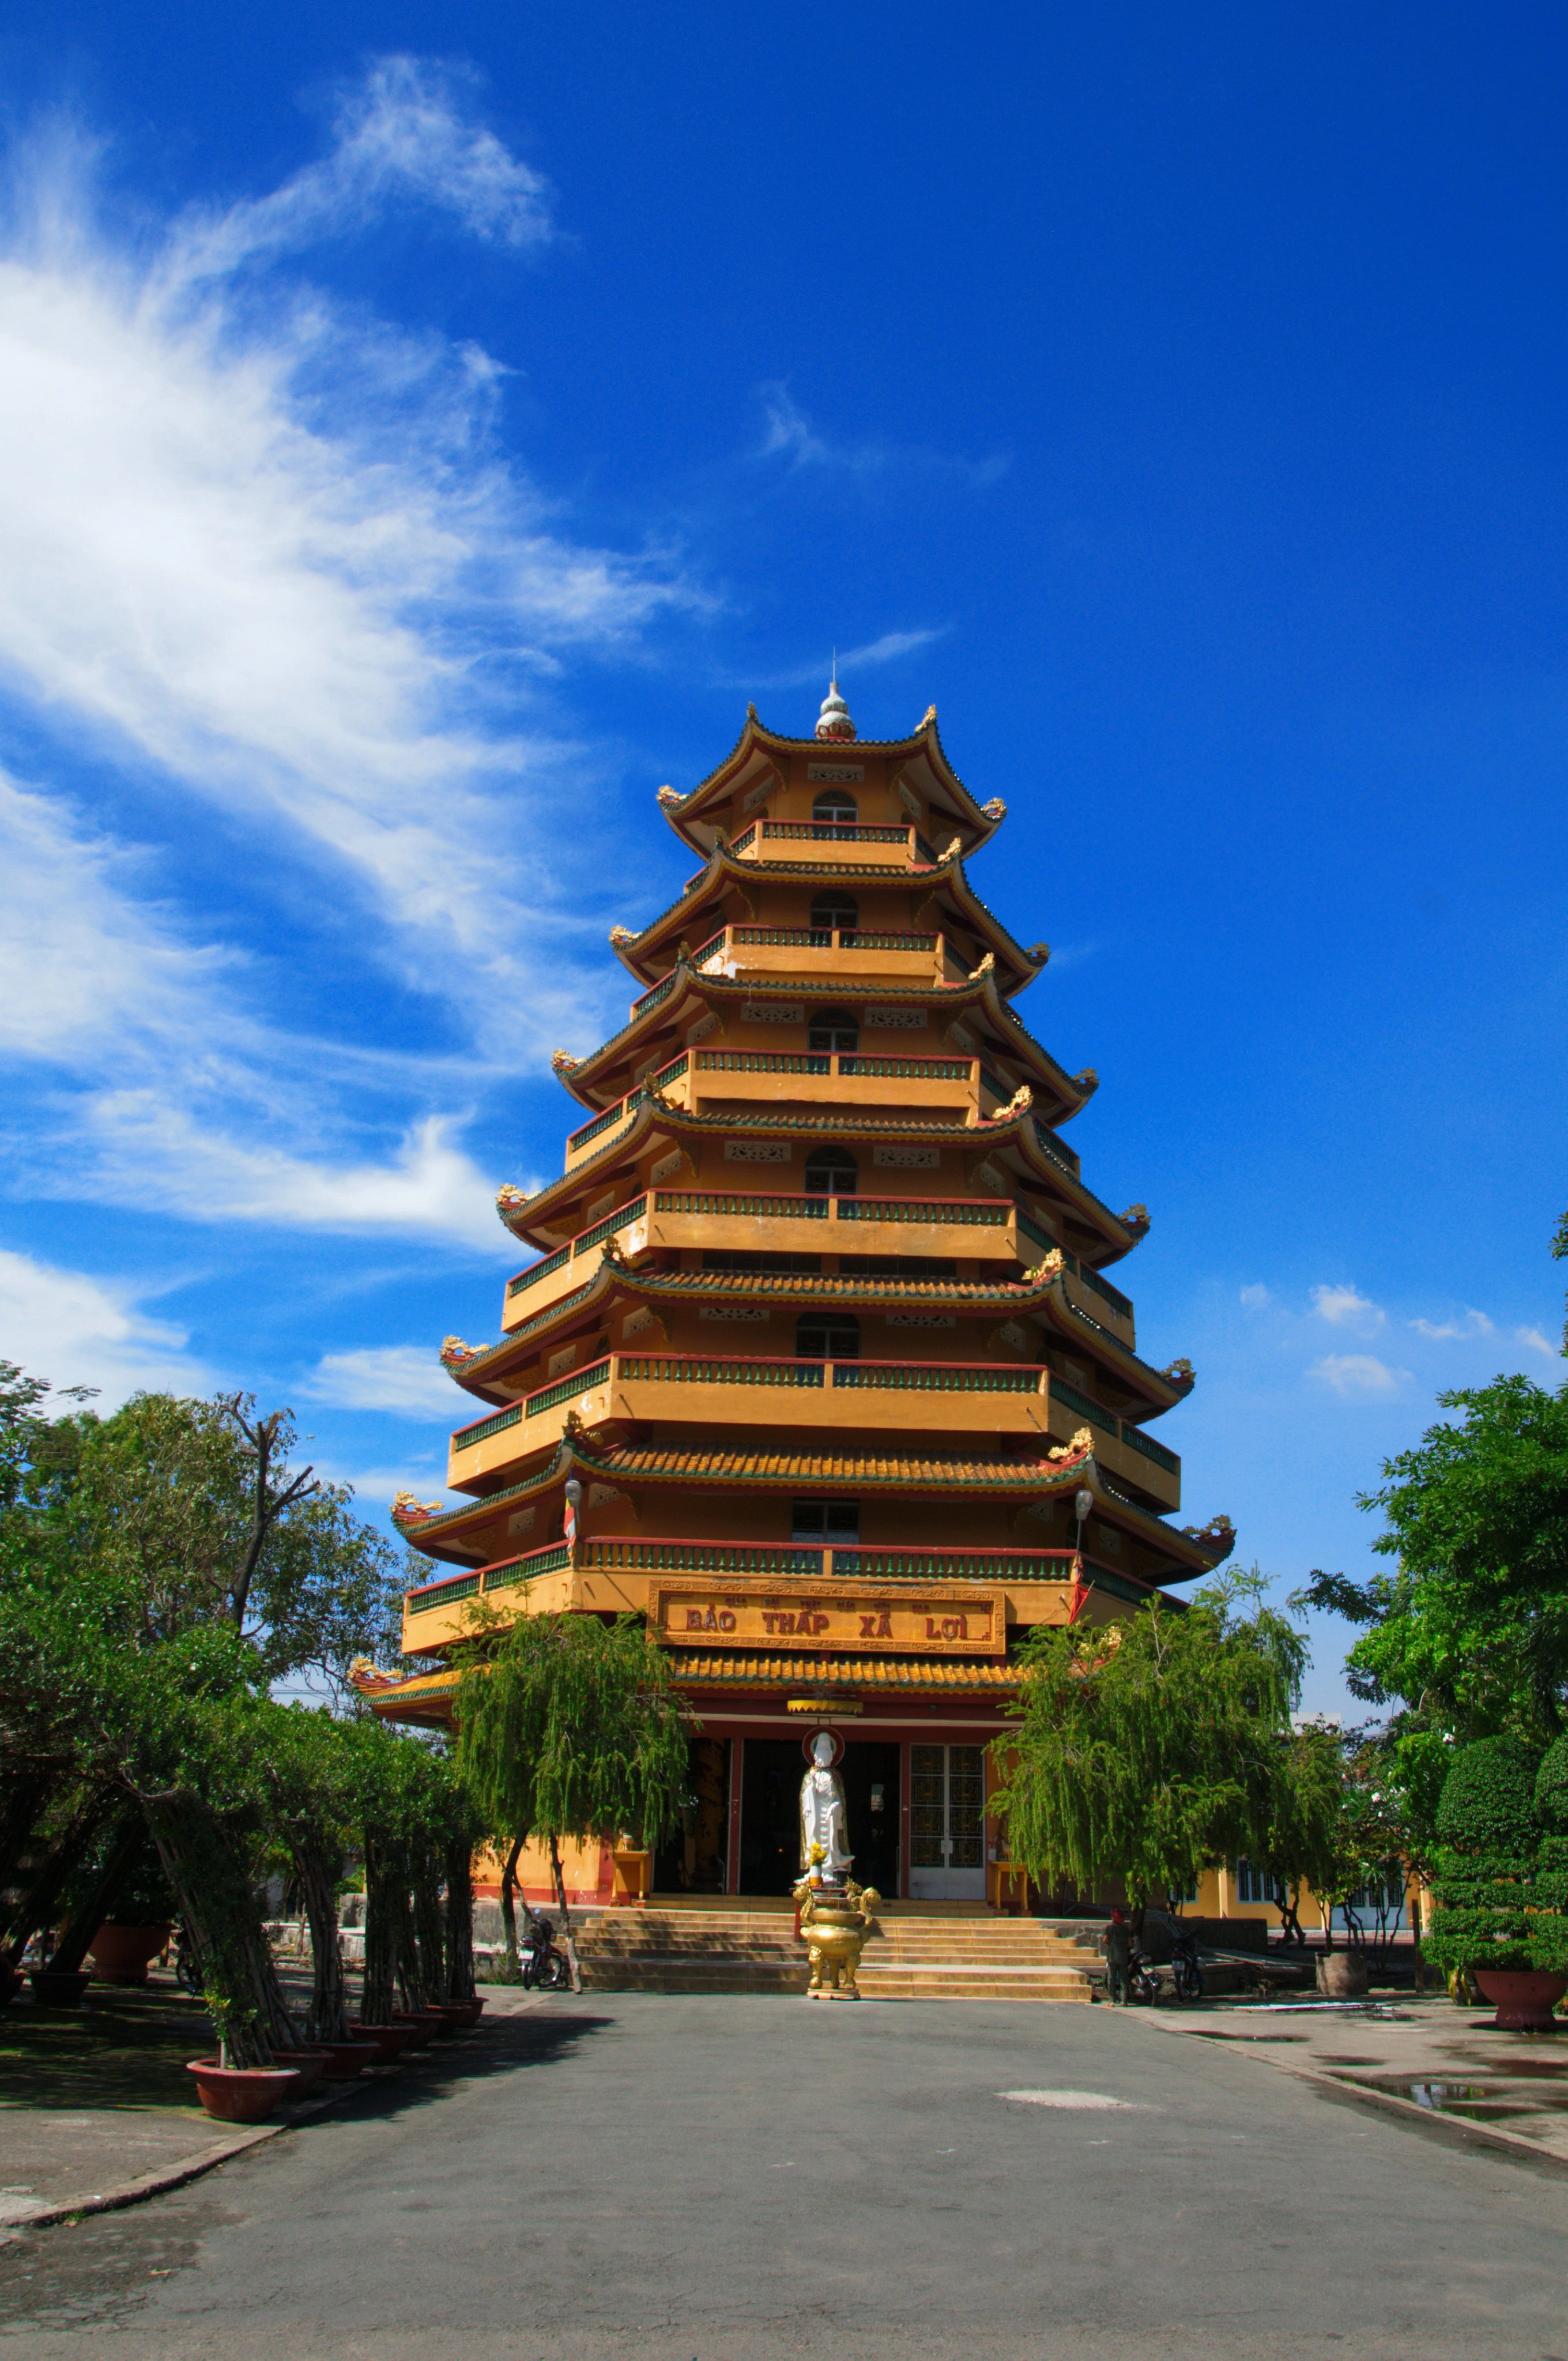 Bảo tháp Xá Lợi ở chùa Giác Lâm. Ảnh: Ngô Viễn An.